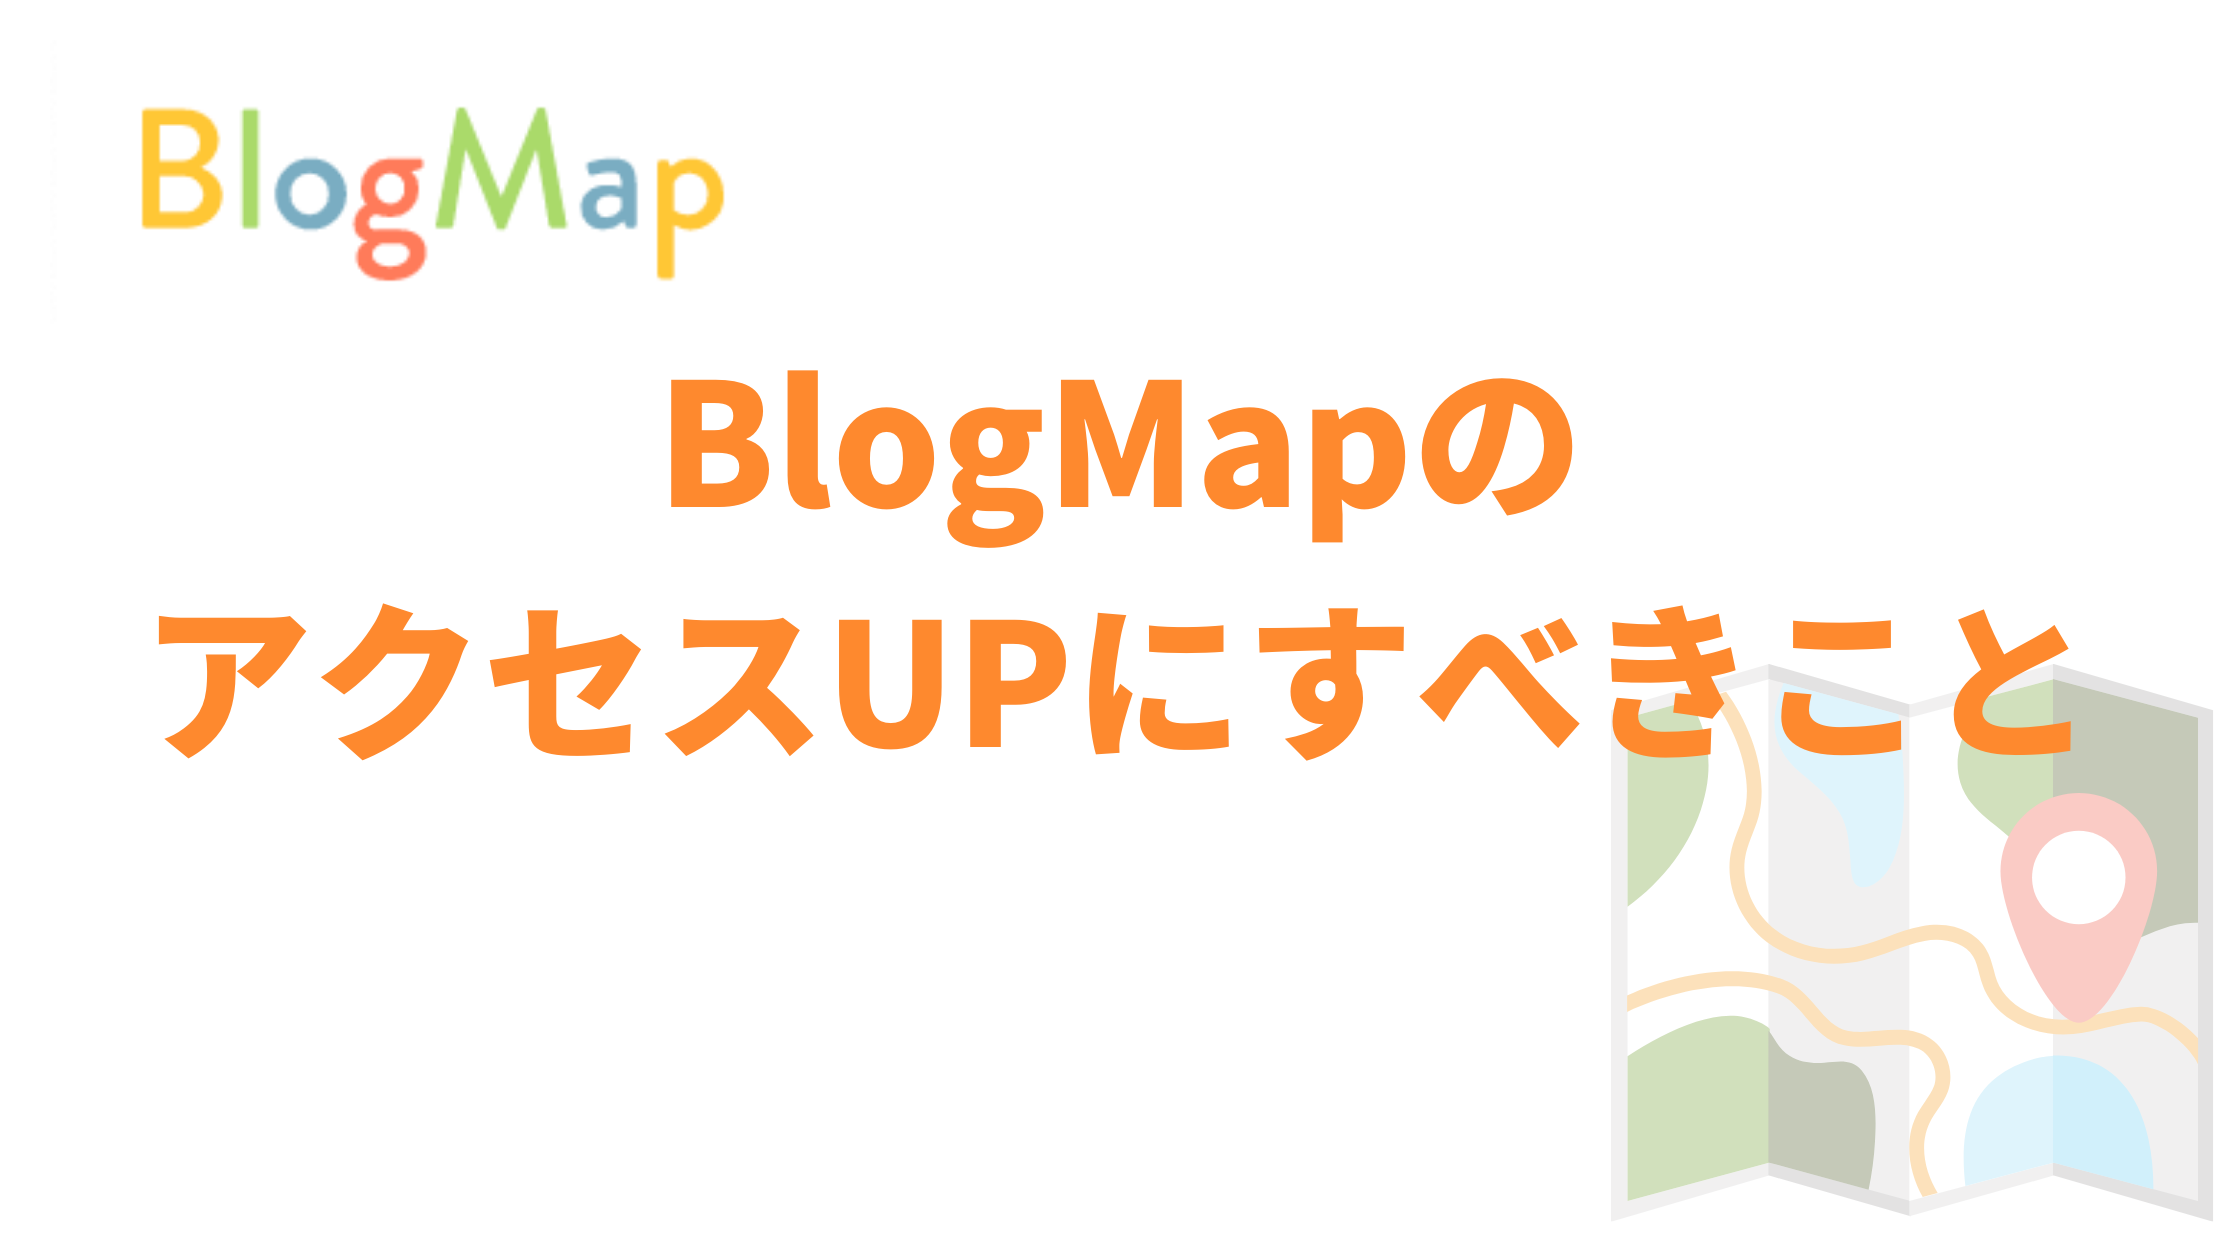 BlogMapのアクセスを増やすためにすべきこと